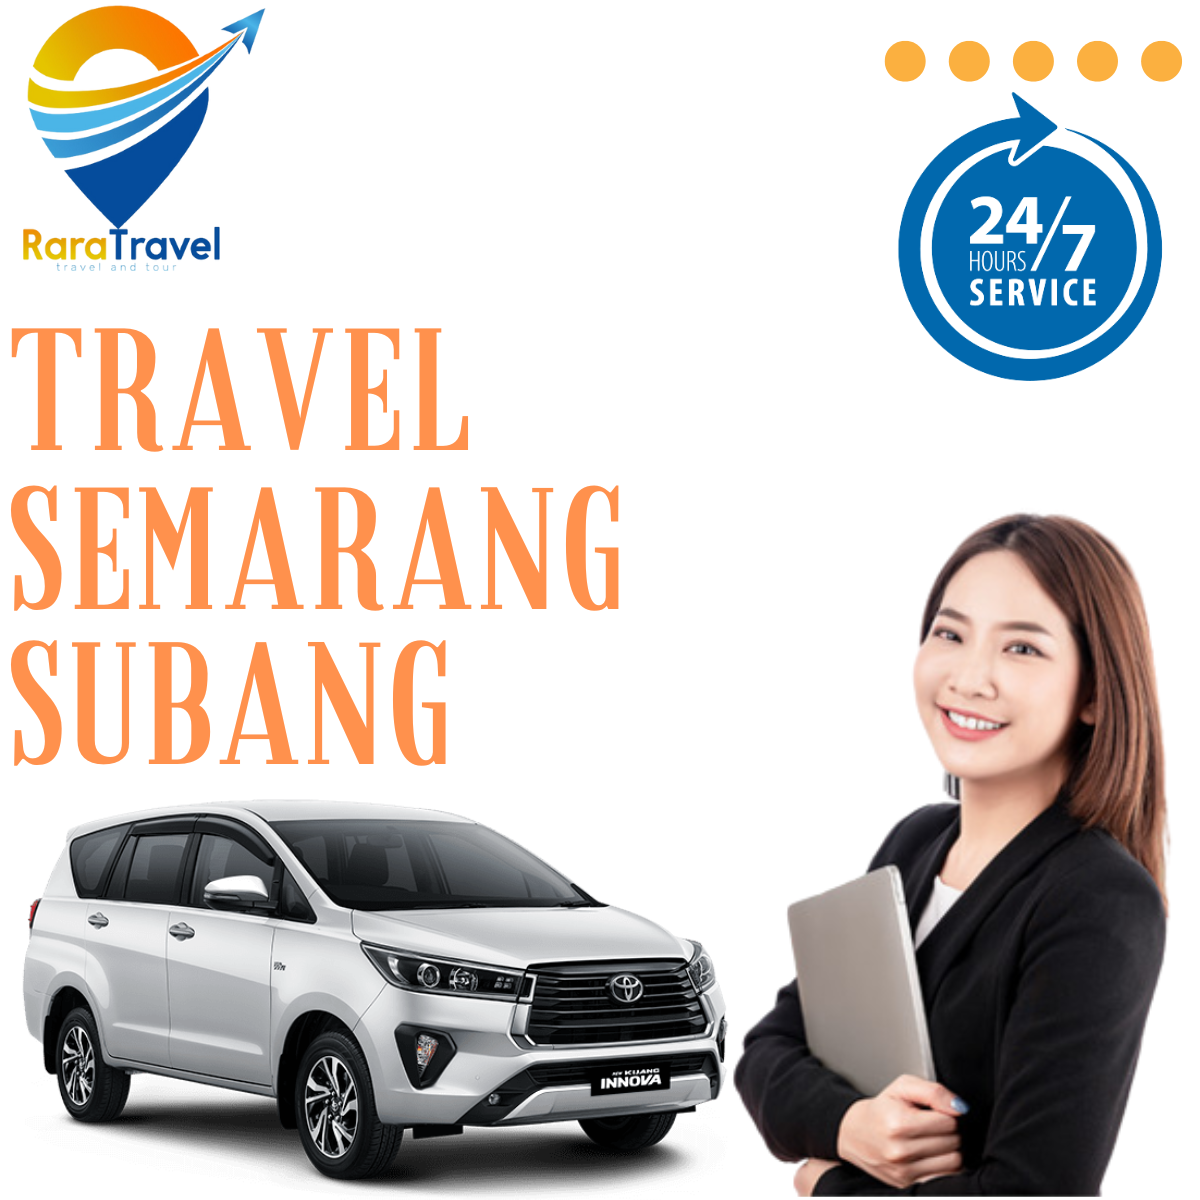 Travel Semarang Subang PP Harga Murah Hiace - RARATRAVEL.ID